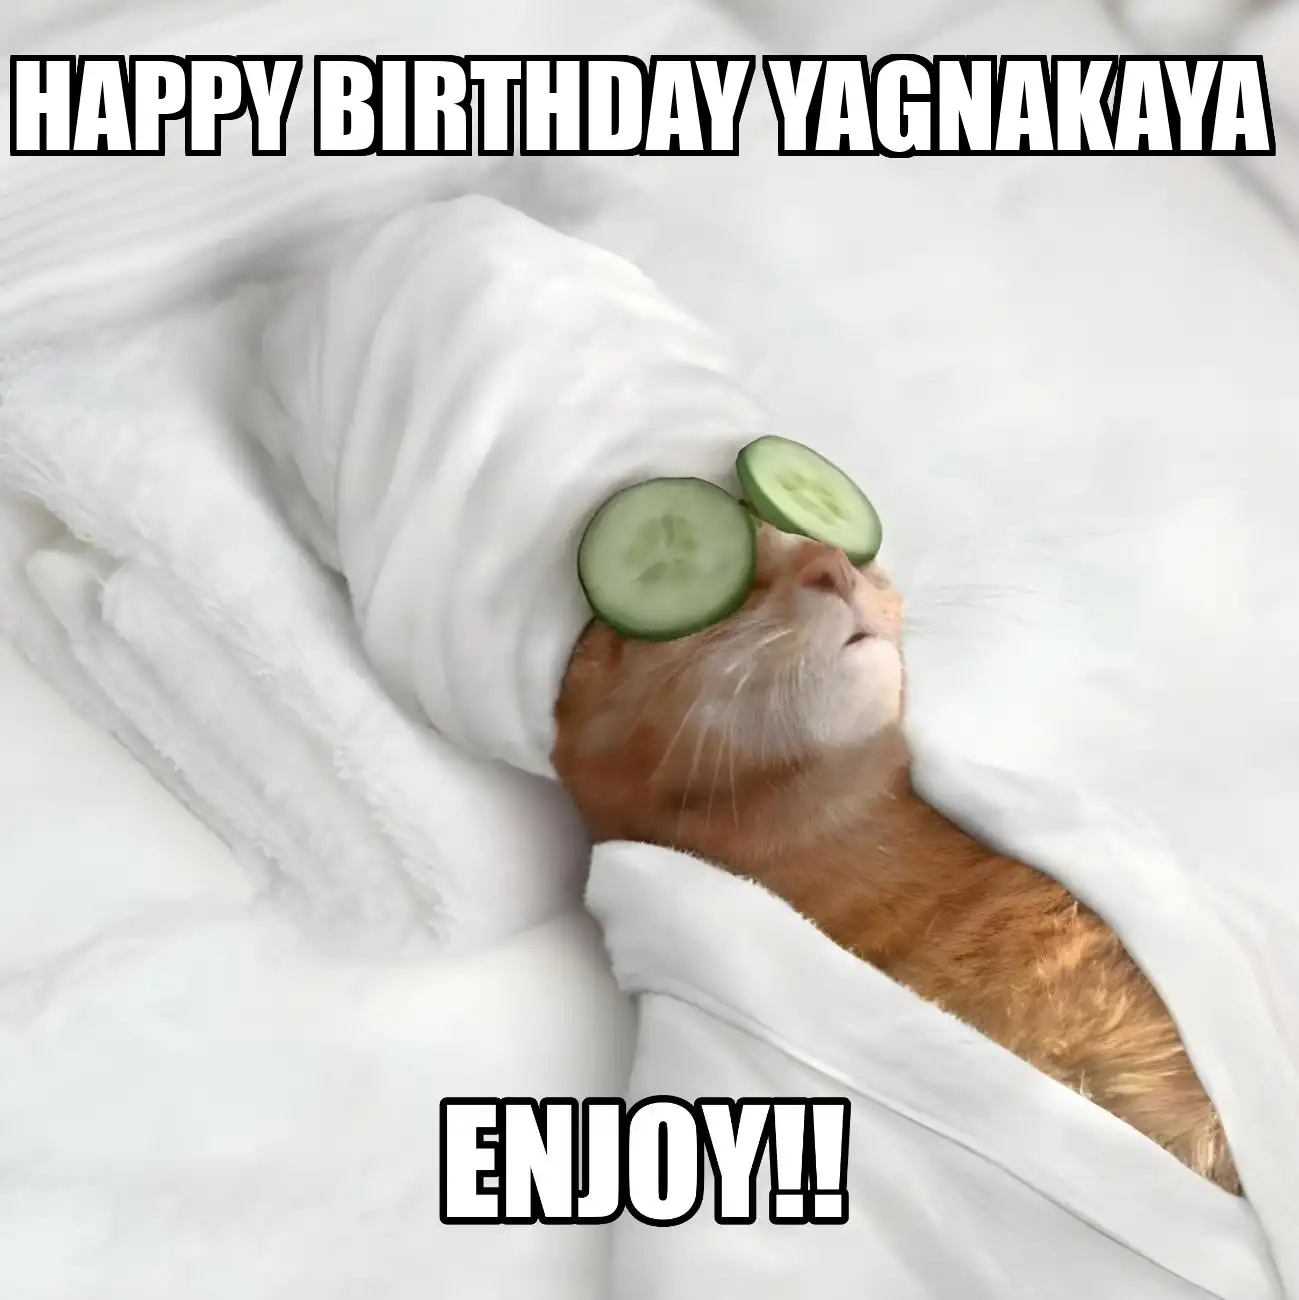 Happy Birthday Yagnakaya Enjoy Cat Meme